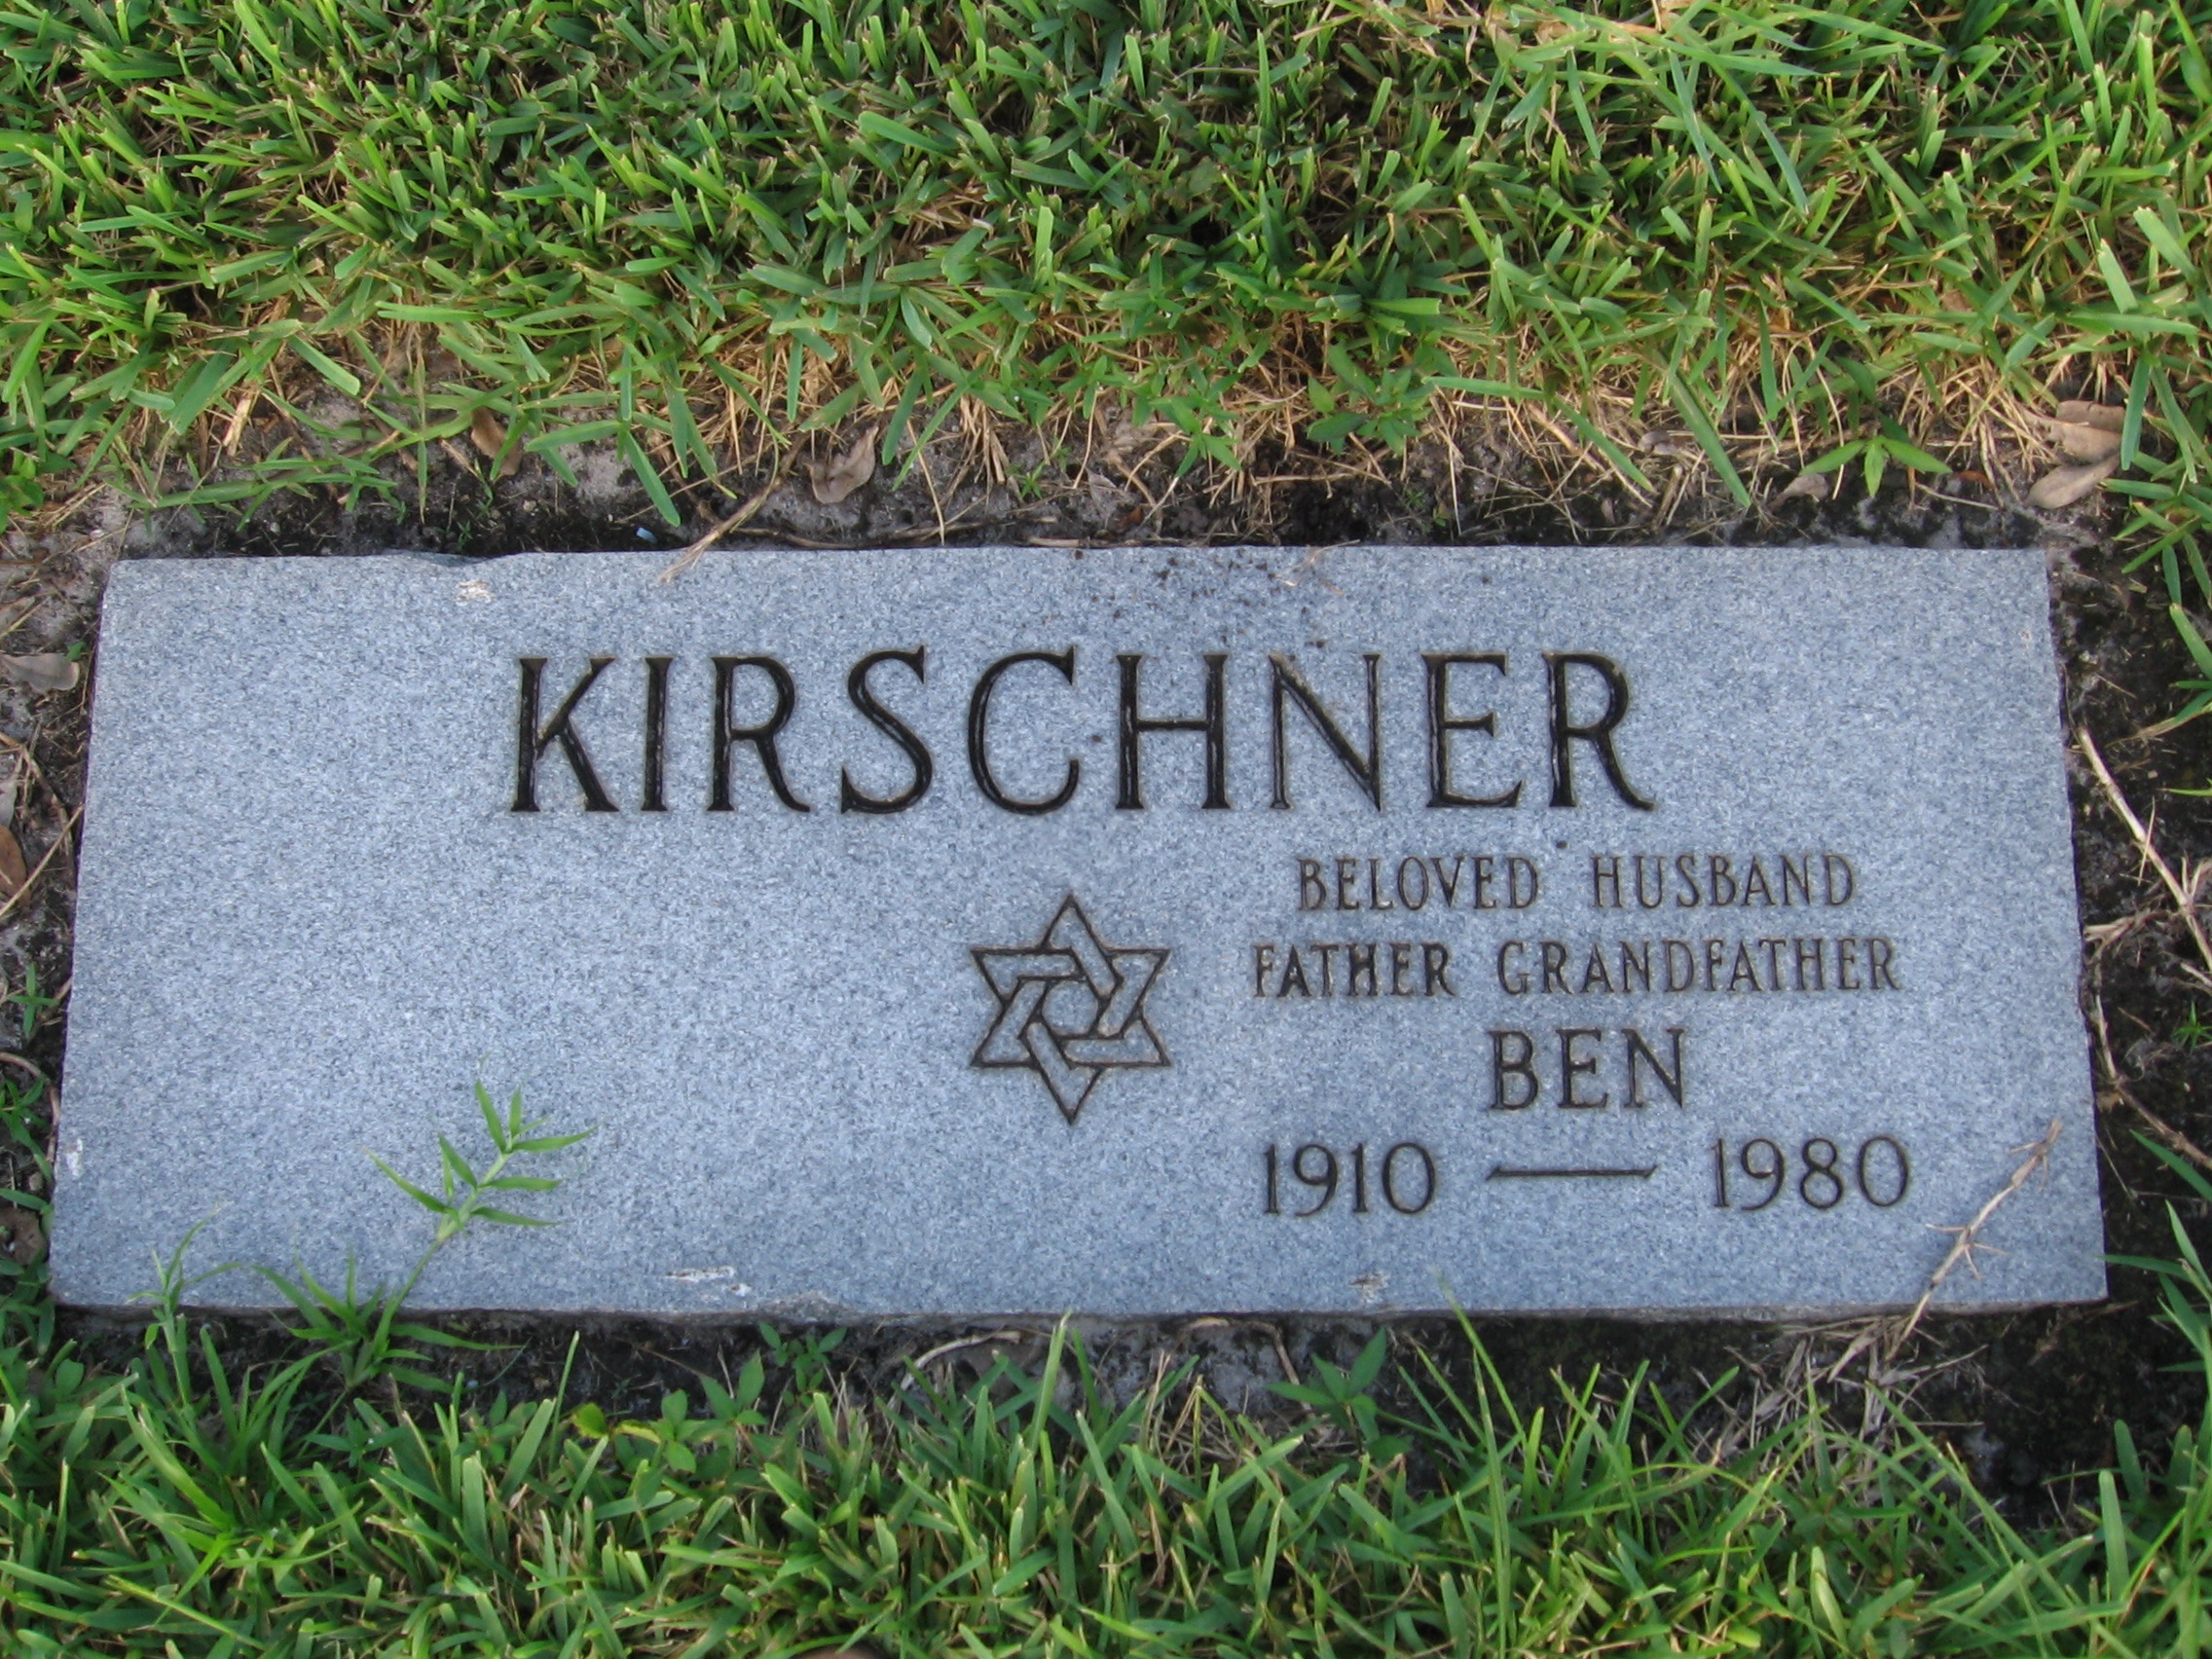 Ben Kirschner